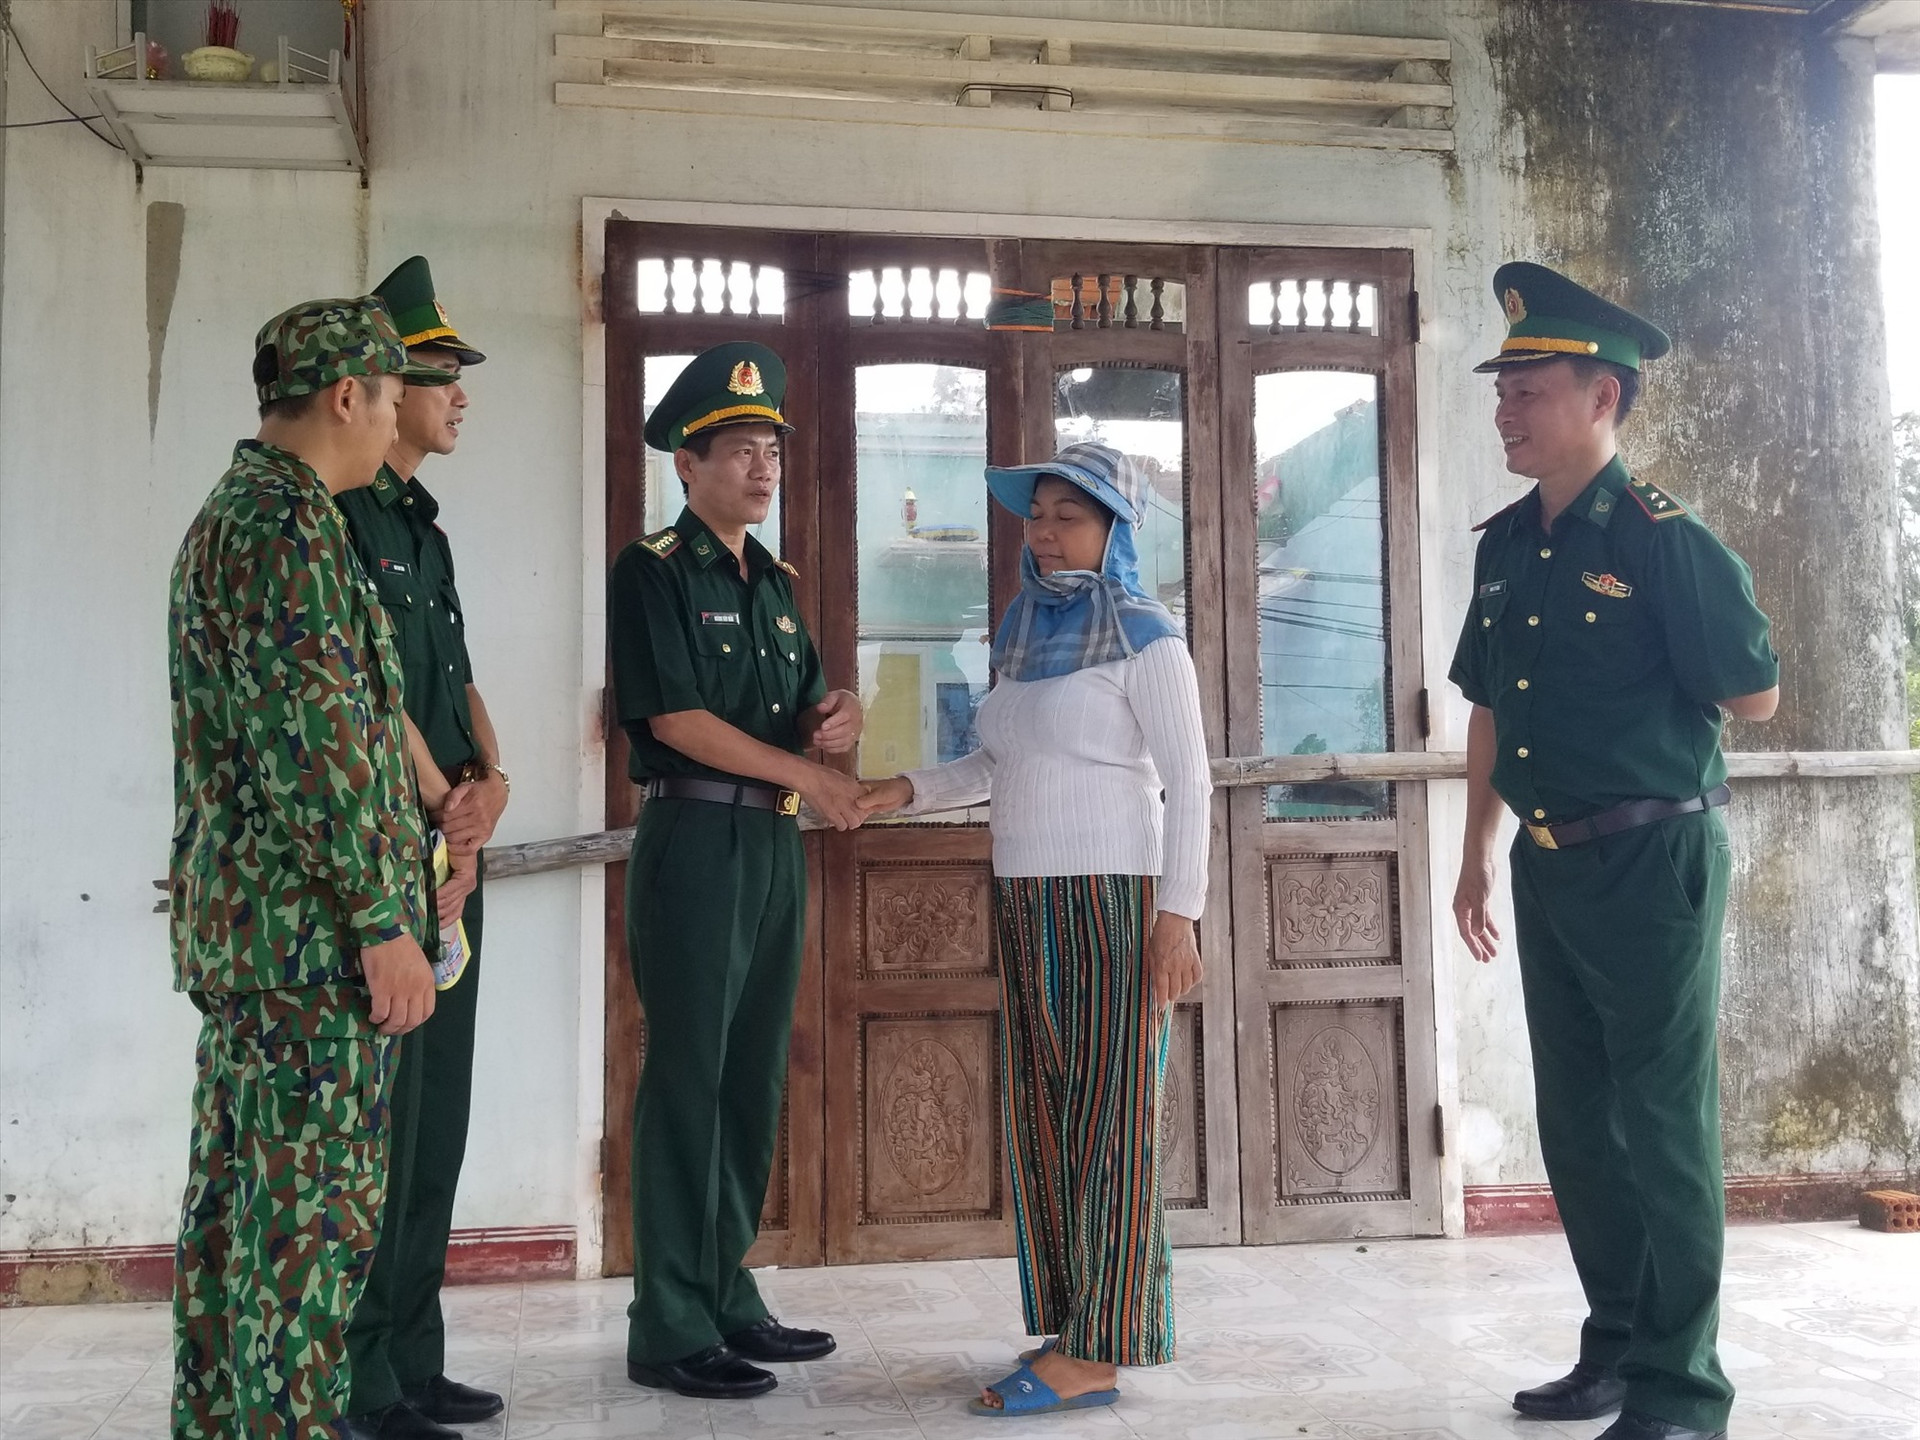 Đại tá Hoàng Văn Mẫn – Chính ủy Bộ đội Biên phòng tỉnh thăm hỏi, chia sẻ, động viên các gia đình bị ảnh hưởng bởi cơn bão số 4 tại xã Bình Minh, huyện Thăng Bình.